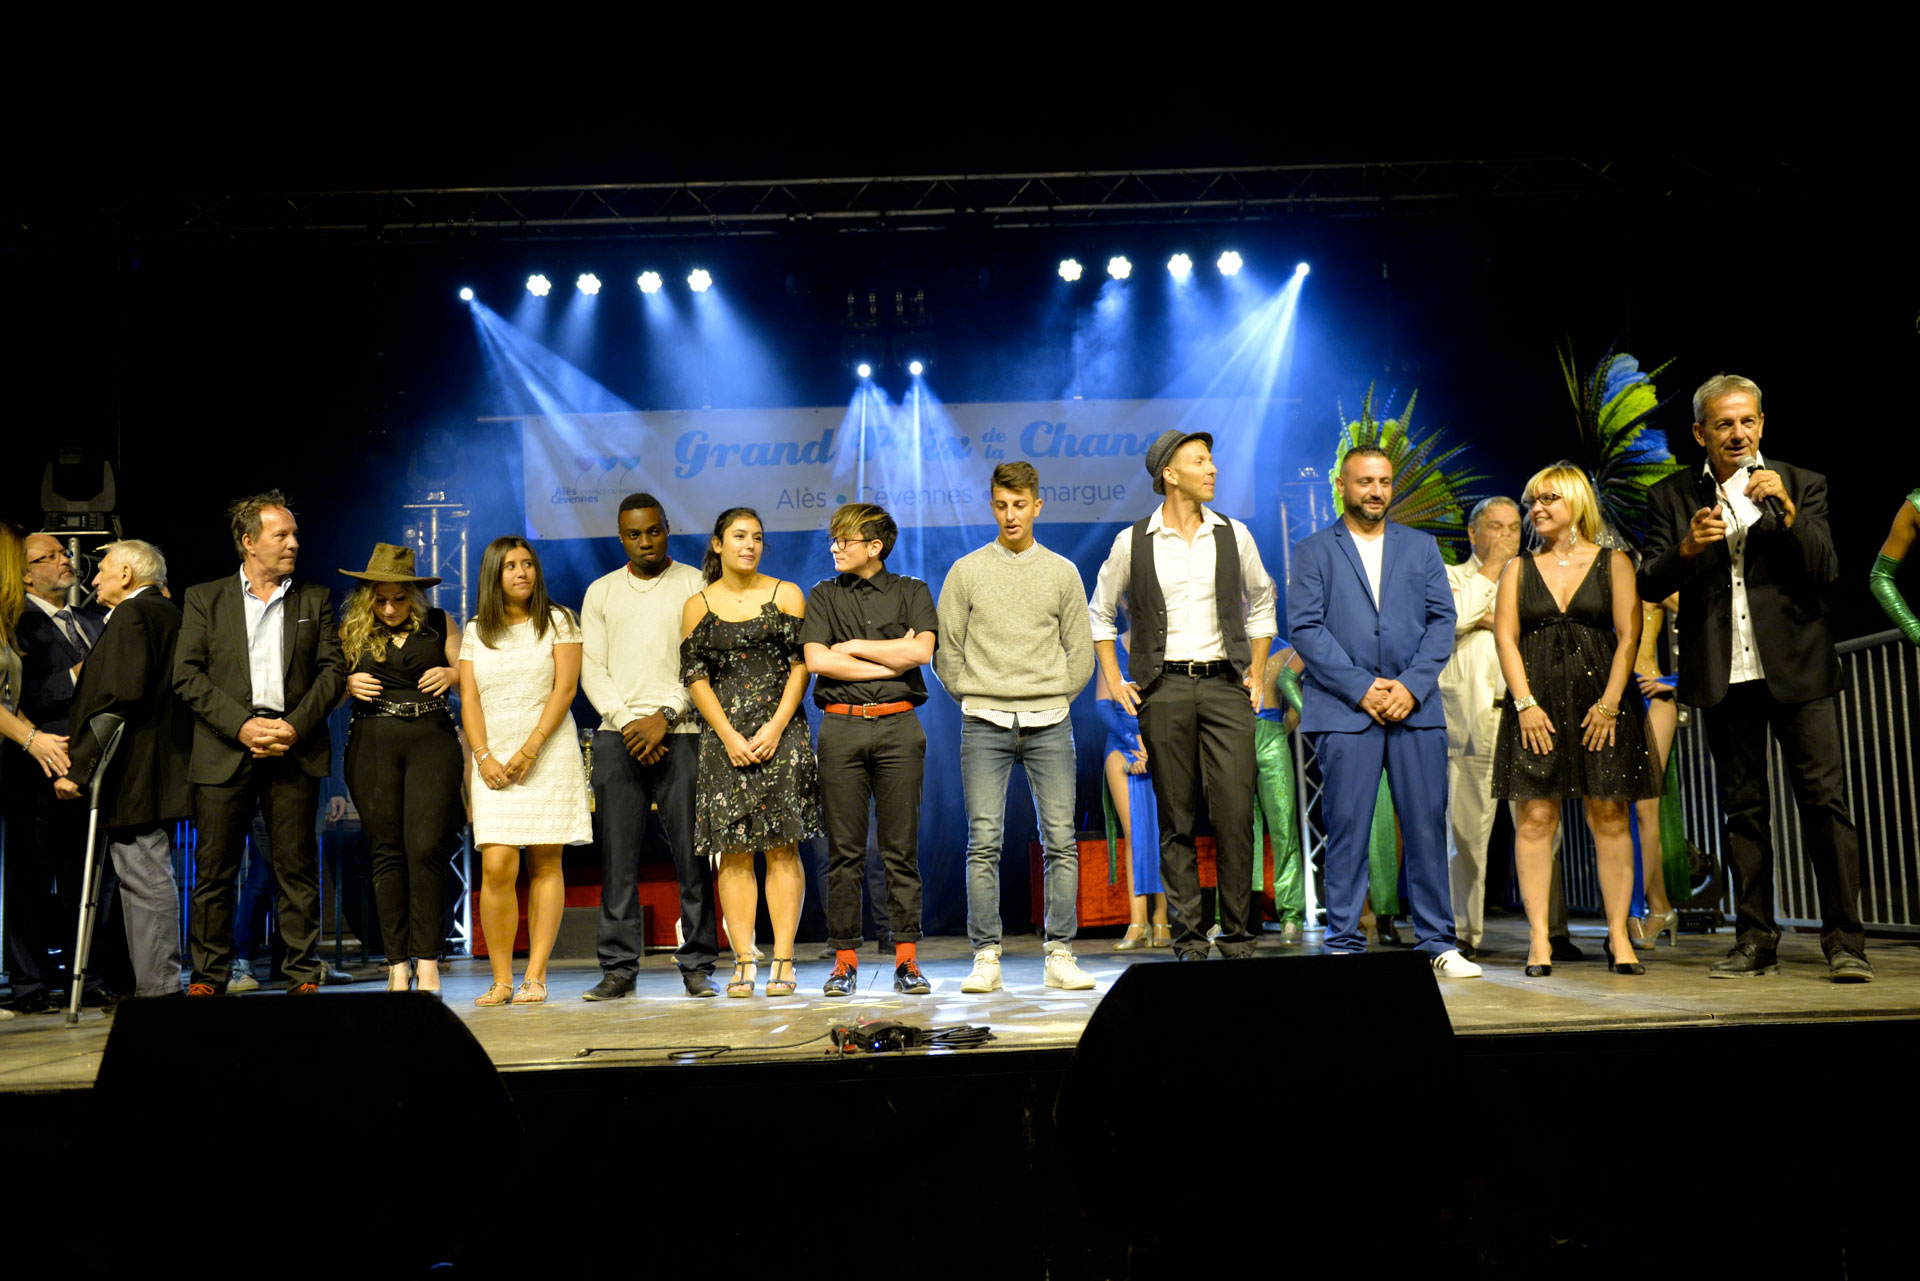 La finale du Grand prix de la chanson Alès-Cévennes-Camargue s’est déroulée vendredi soir 24 août aux arènes du Tempéras, devant un public nombreux conquis par les dix candidats et ravi du spectacle proposé.